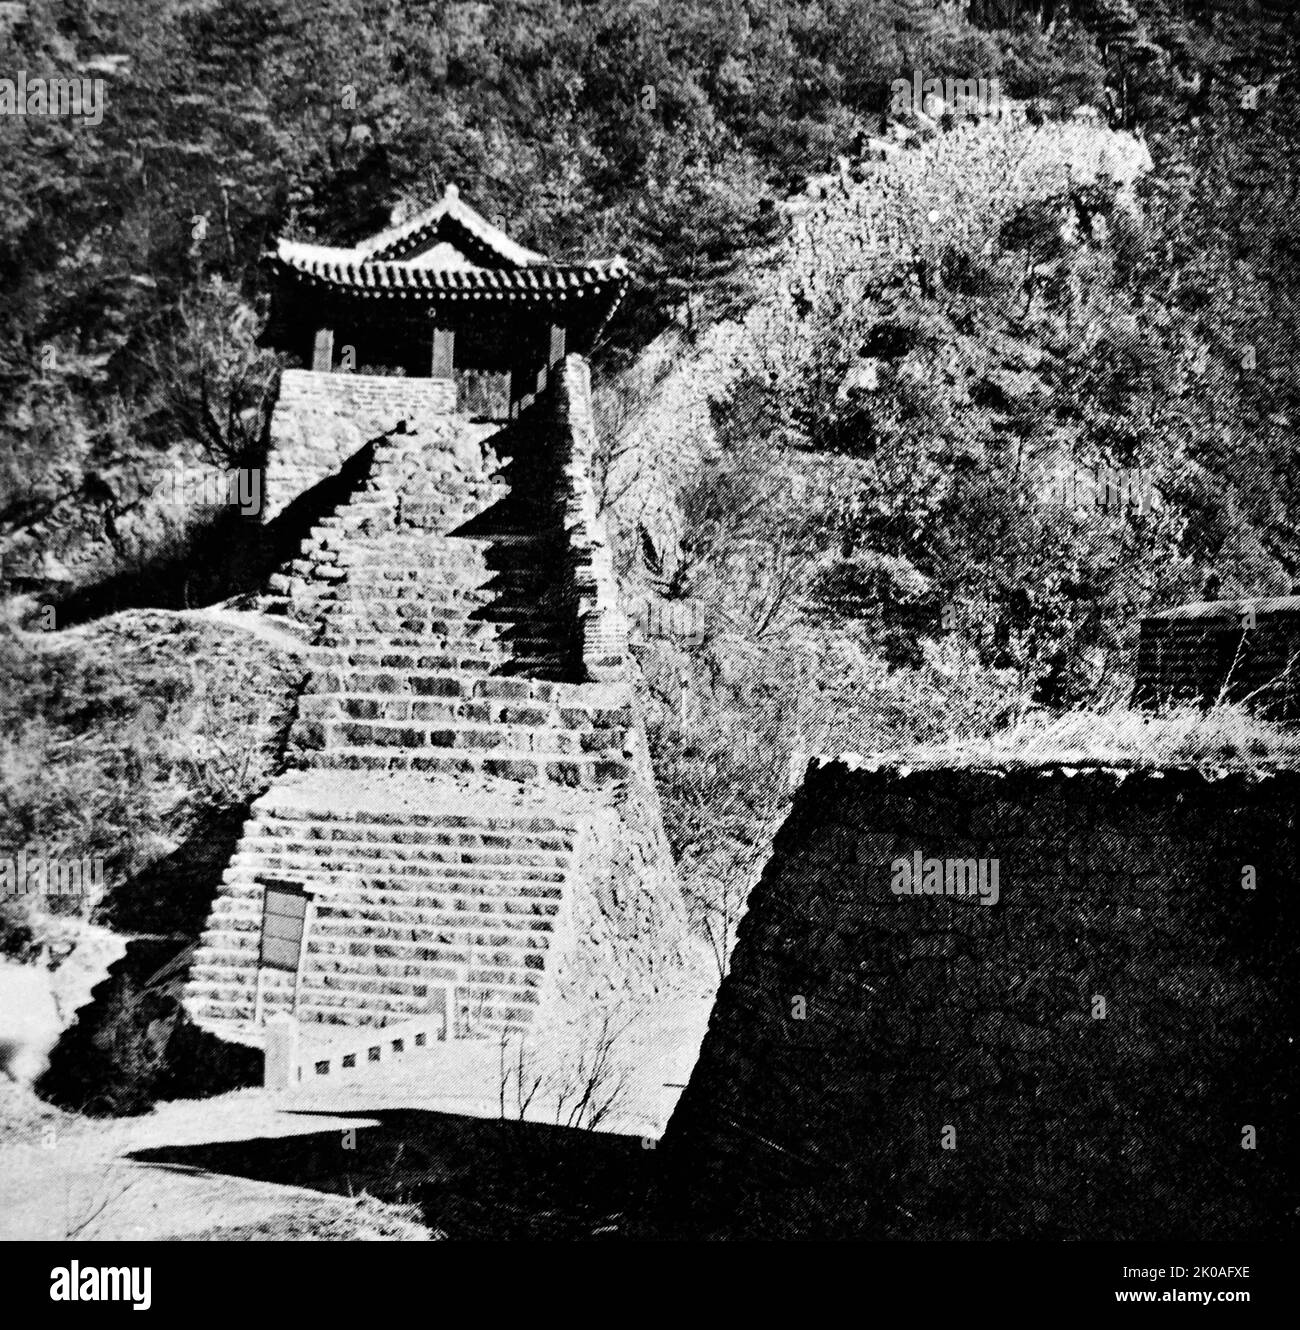 Die Festung wurde 1626 in Gwangju an der Stelle einer alten Festung von Silla (672 n. Chr.) errichtet. Als die Manchus Korea einmarschierten, wurde König Injo hier belagert. Die landschaftliche Schönheit dauert das ganze Jahr über. Aus der Zeit der Joseon-Dynastie (1392 - 1910) Stockfoto